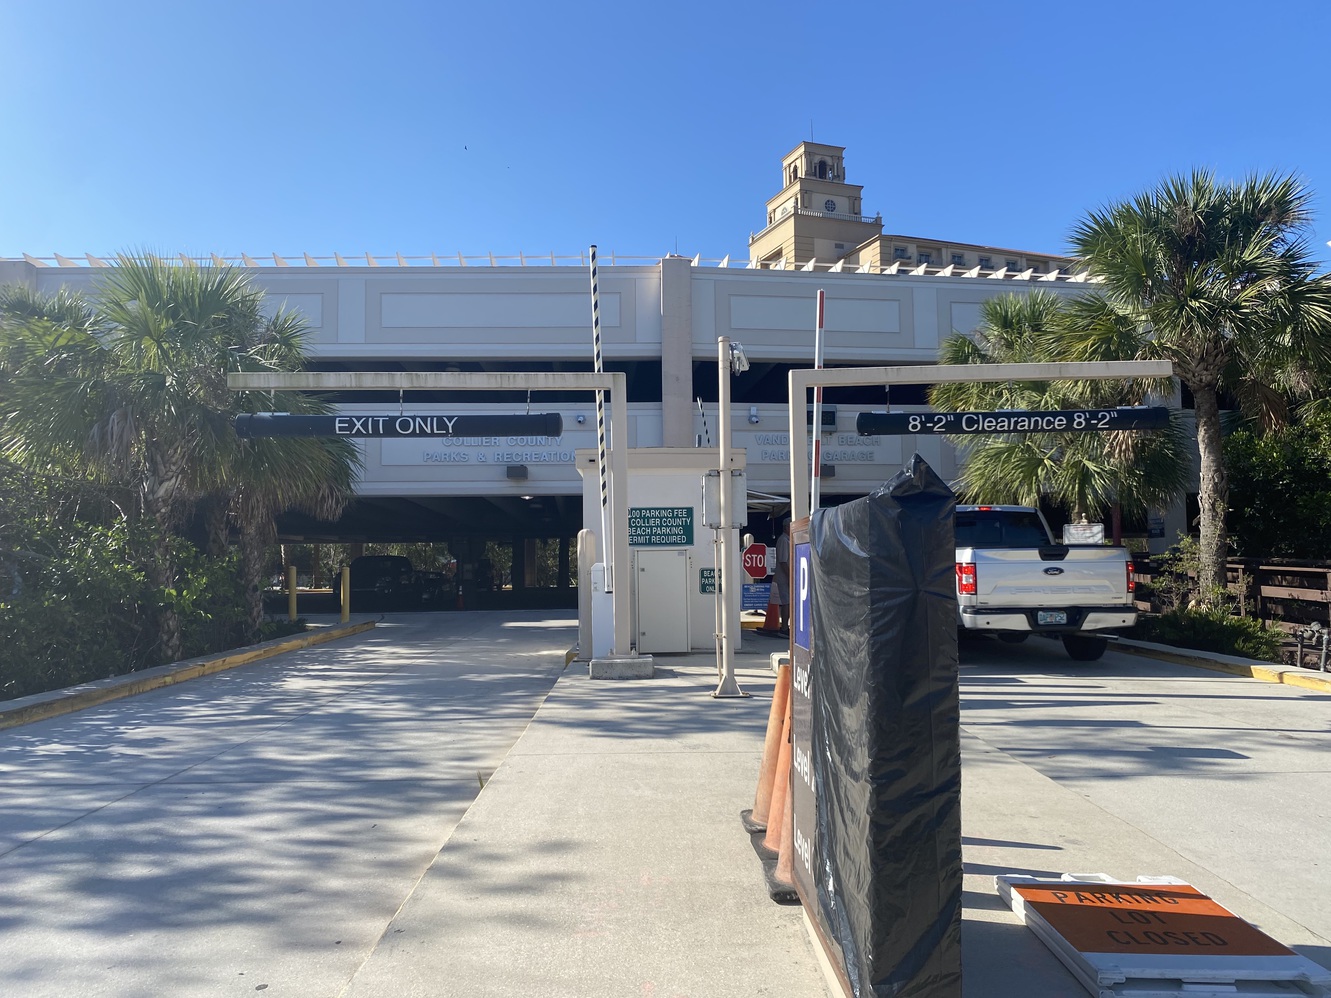 Vanderbilt Beach
      has its own parking garage, which is accessible.